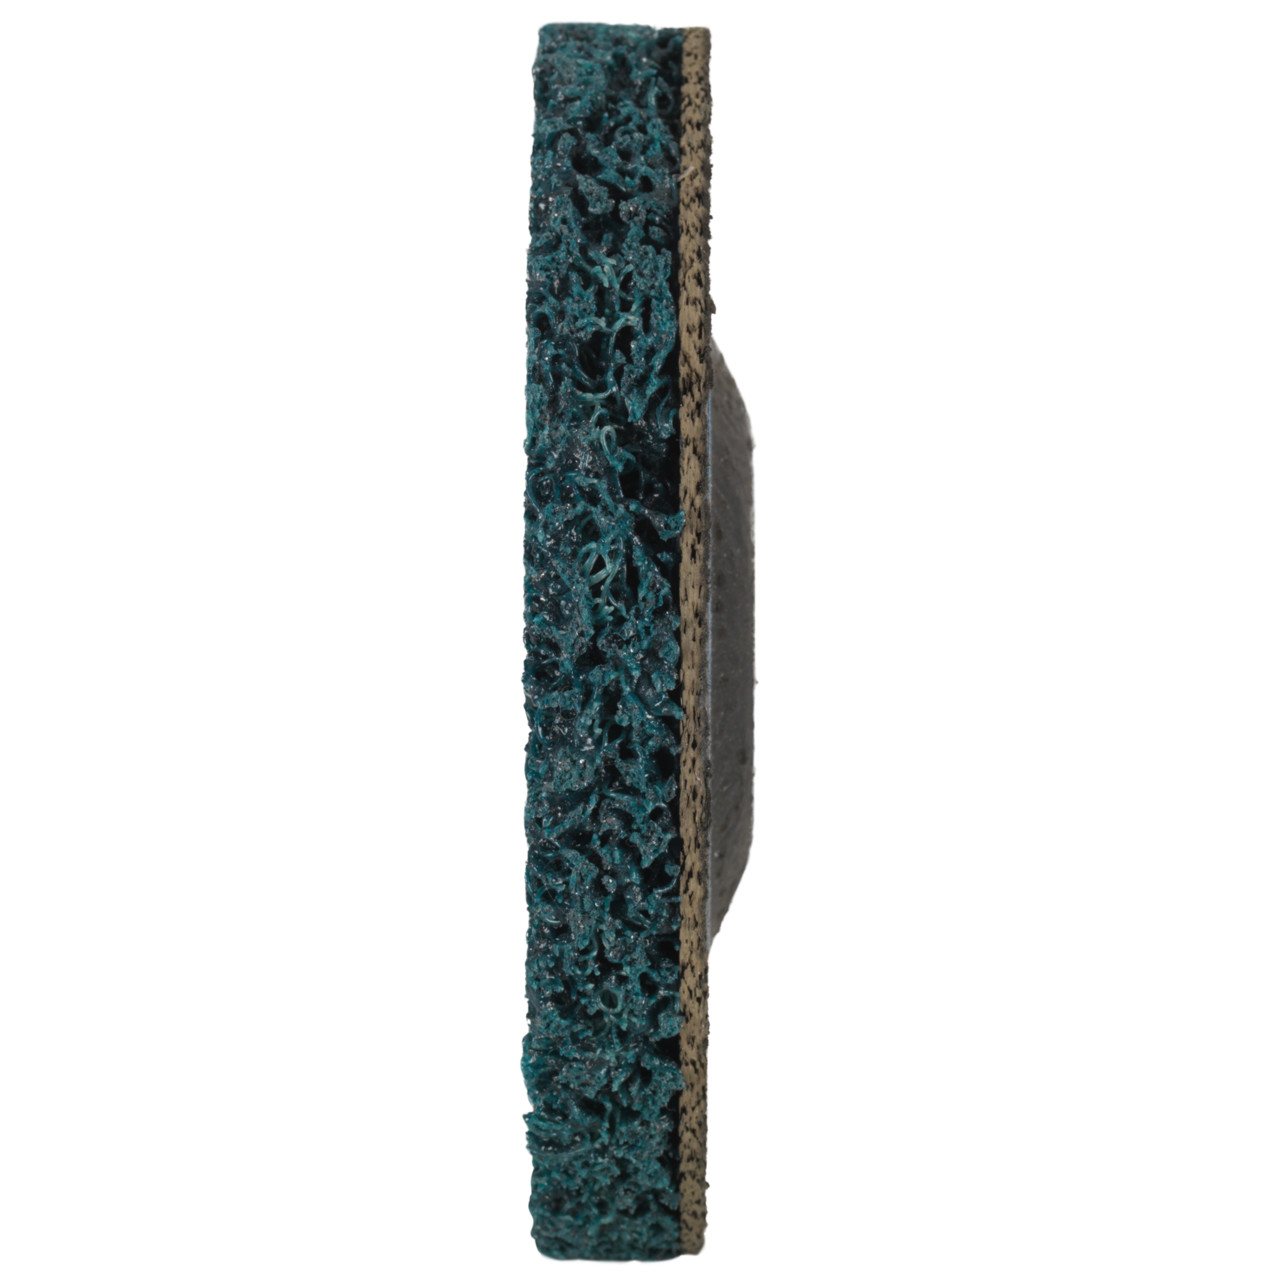 Tyrolit Disque de nettoyage grossier DxH 178x22,2 Utilisation universelle, C GROB, forme : 28- (disque de nettoyage grossier), art. 898018